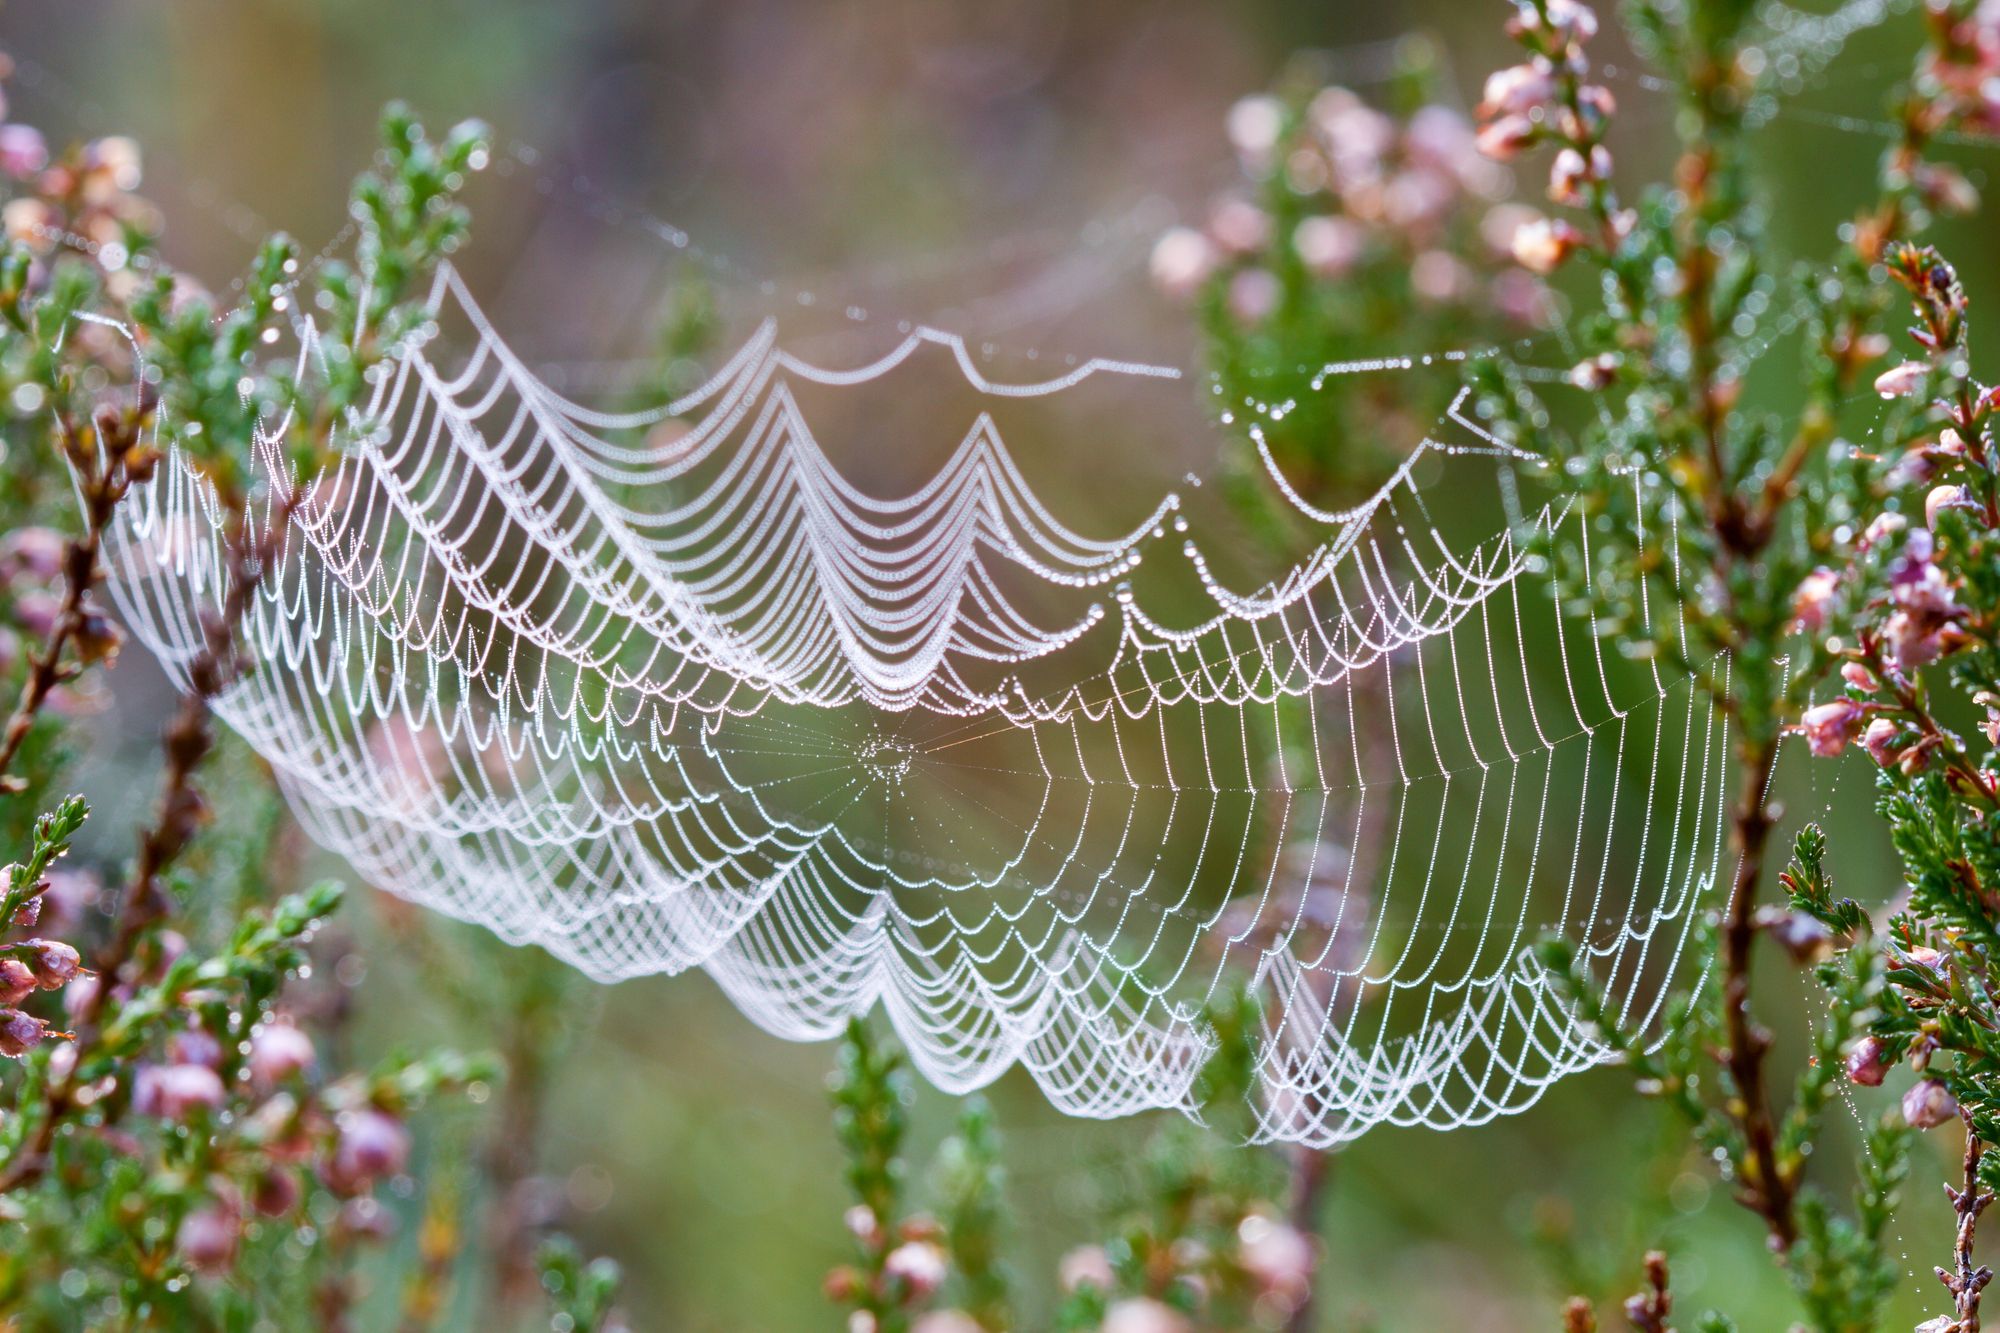 Tajemství pavoučích sítí odhaleno: stavba sítě krok po kroku